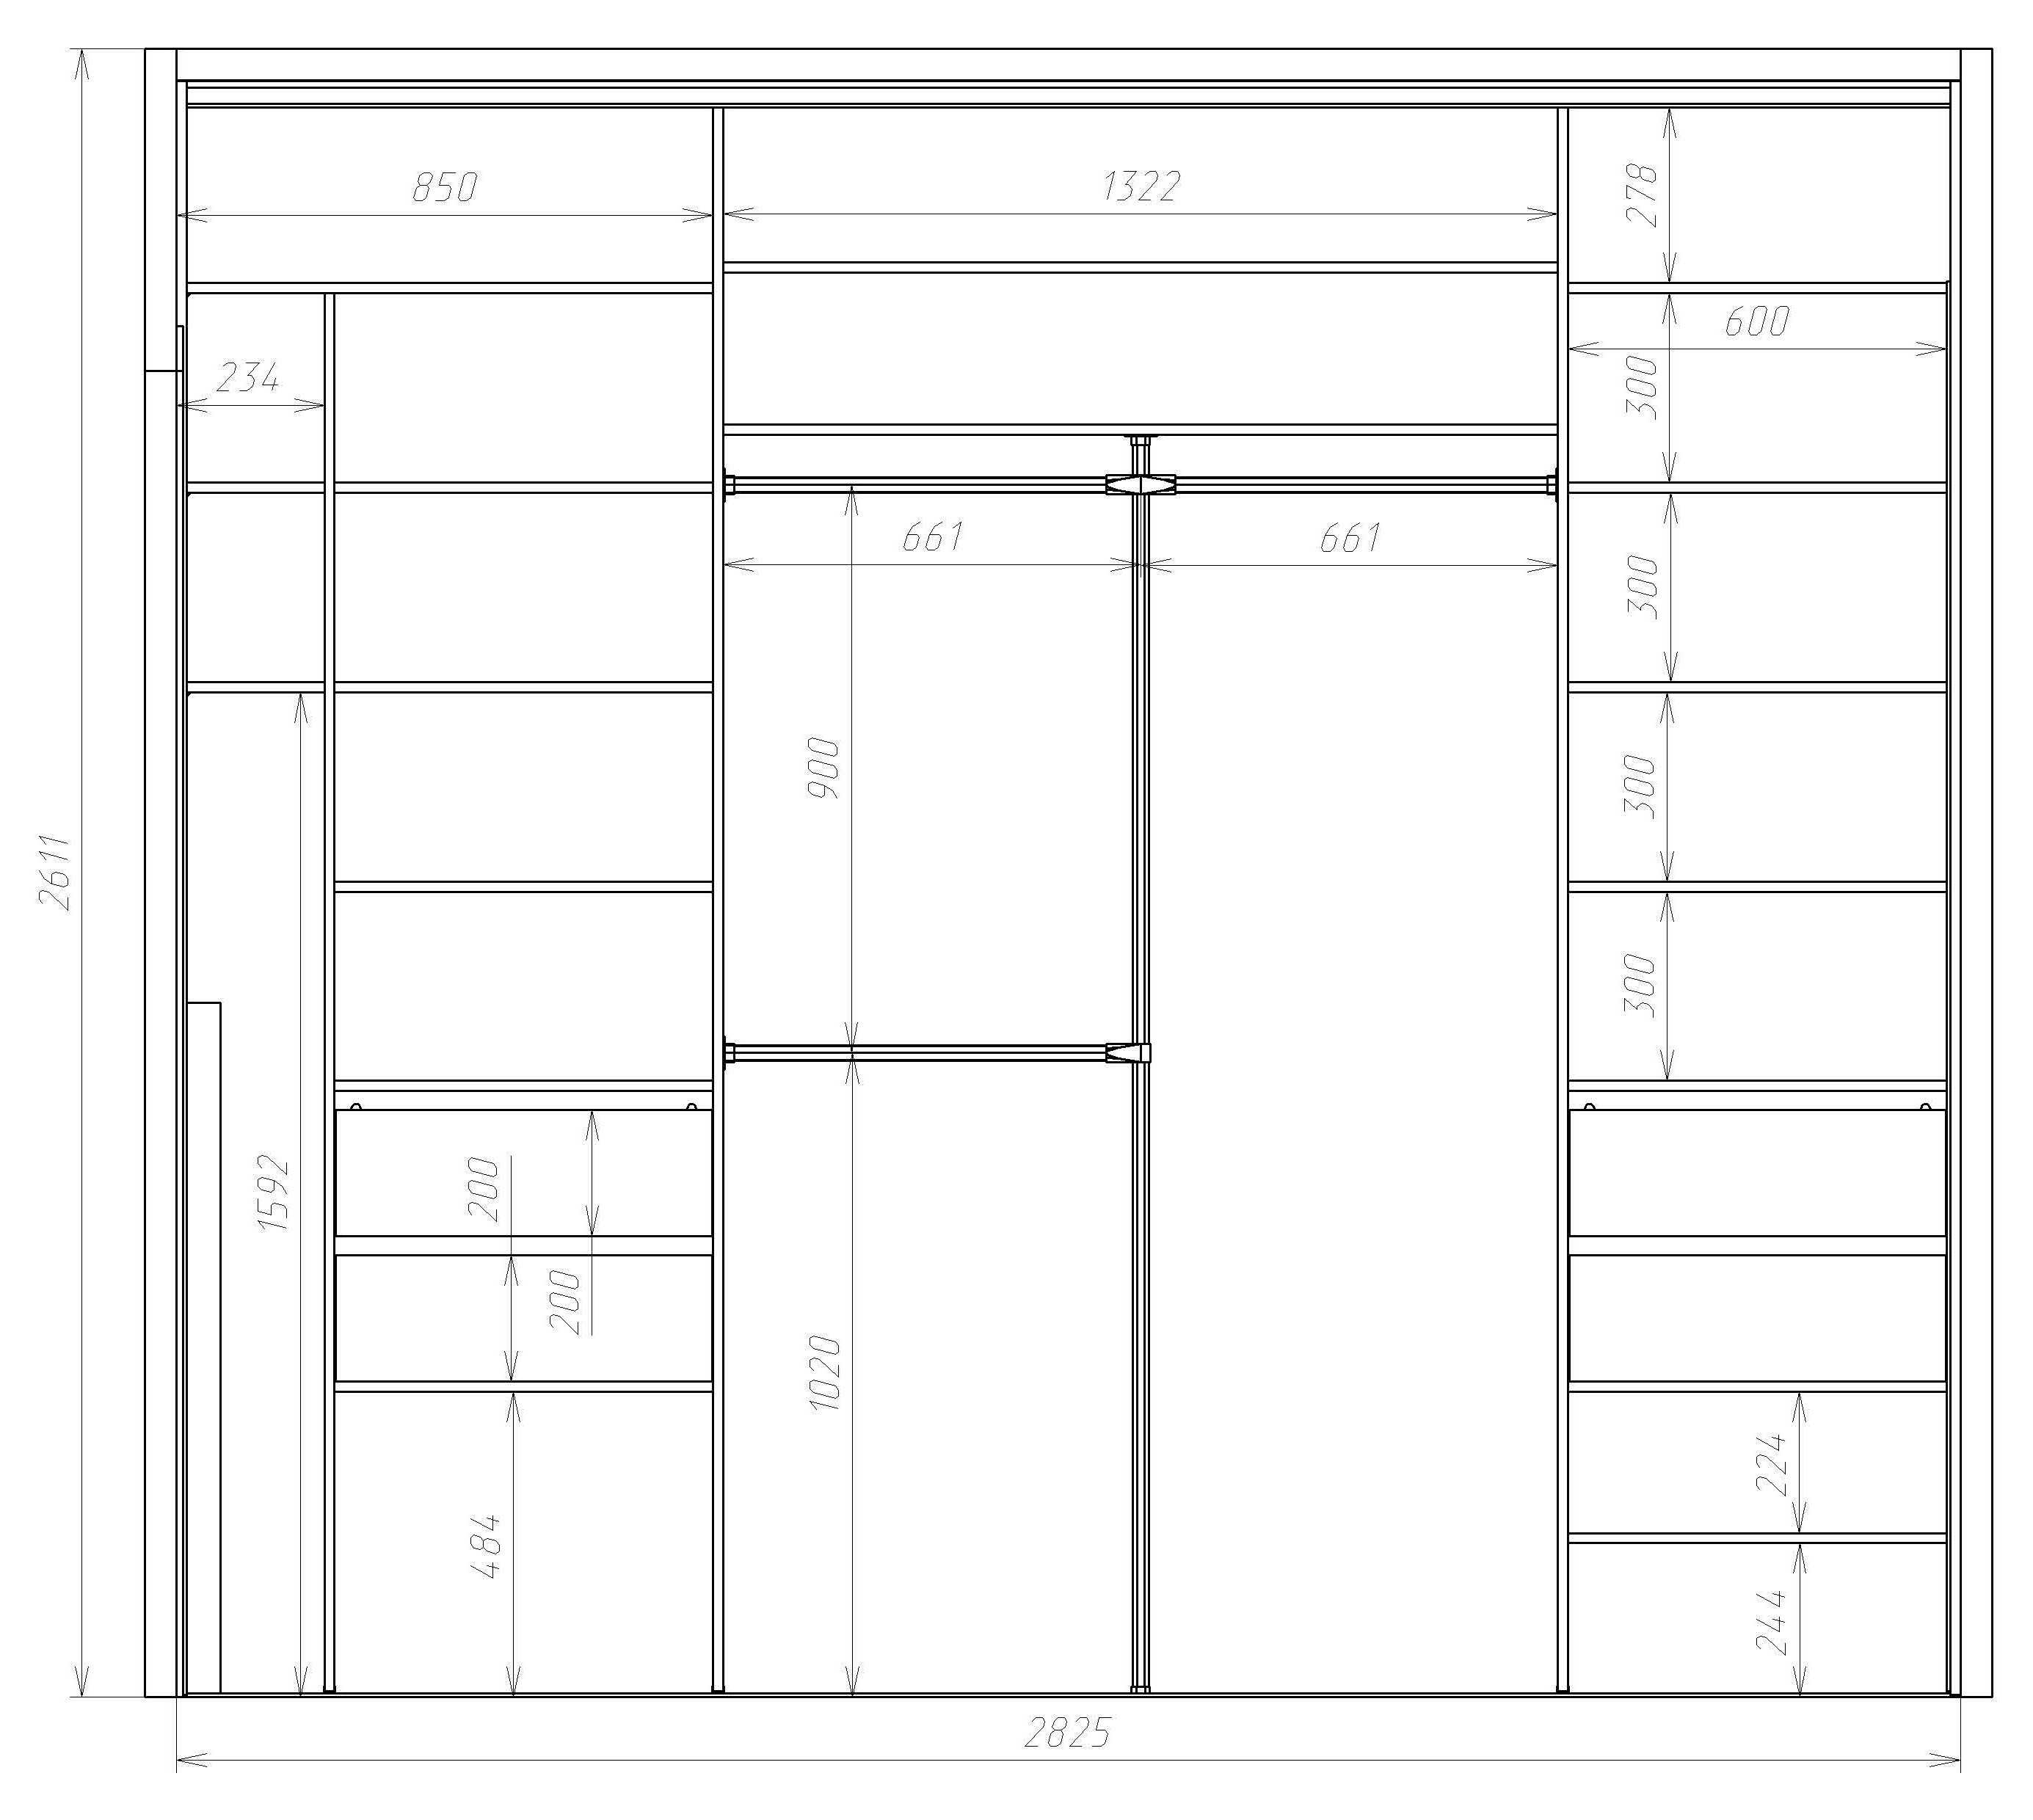 Шкафы для балкона своими руками: идеи, инструкции, схемы, чертежи